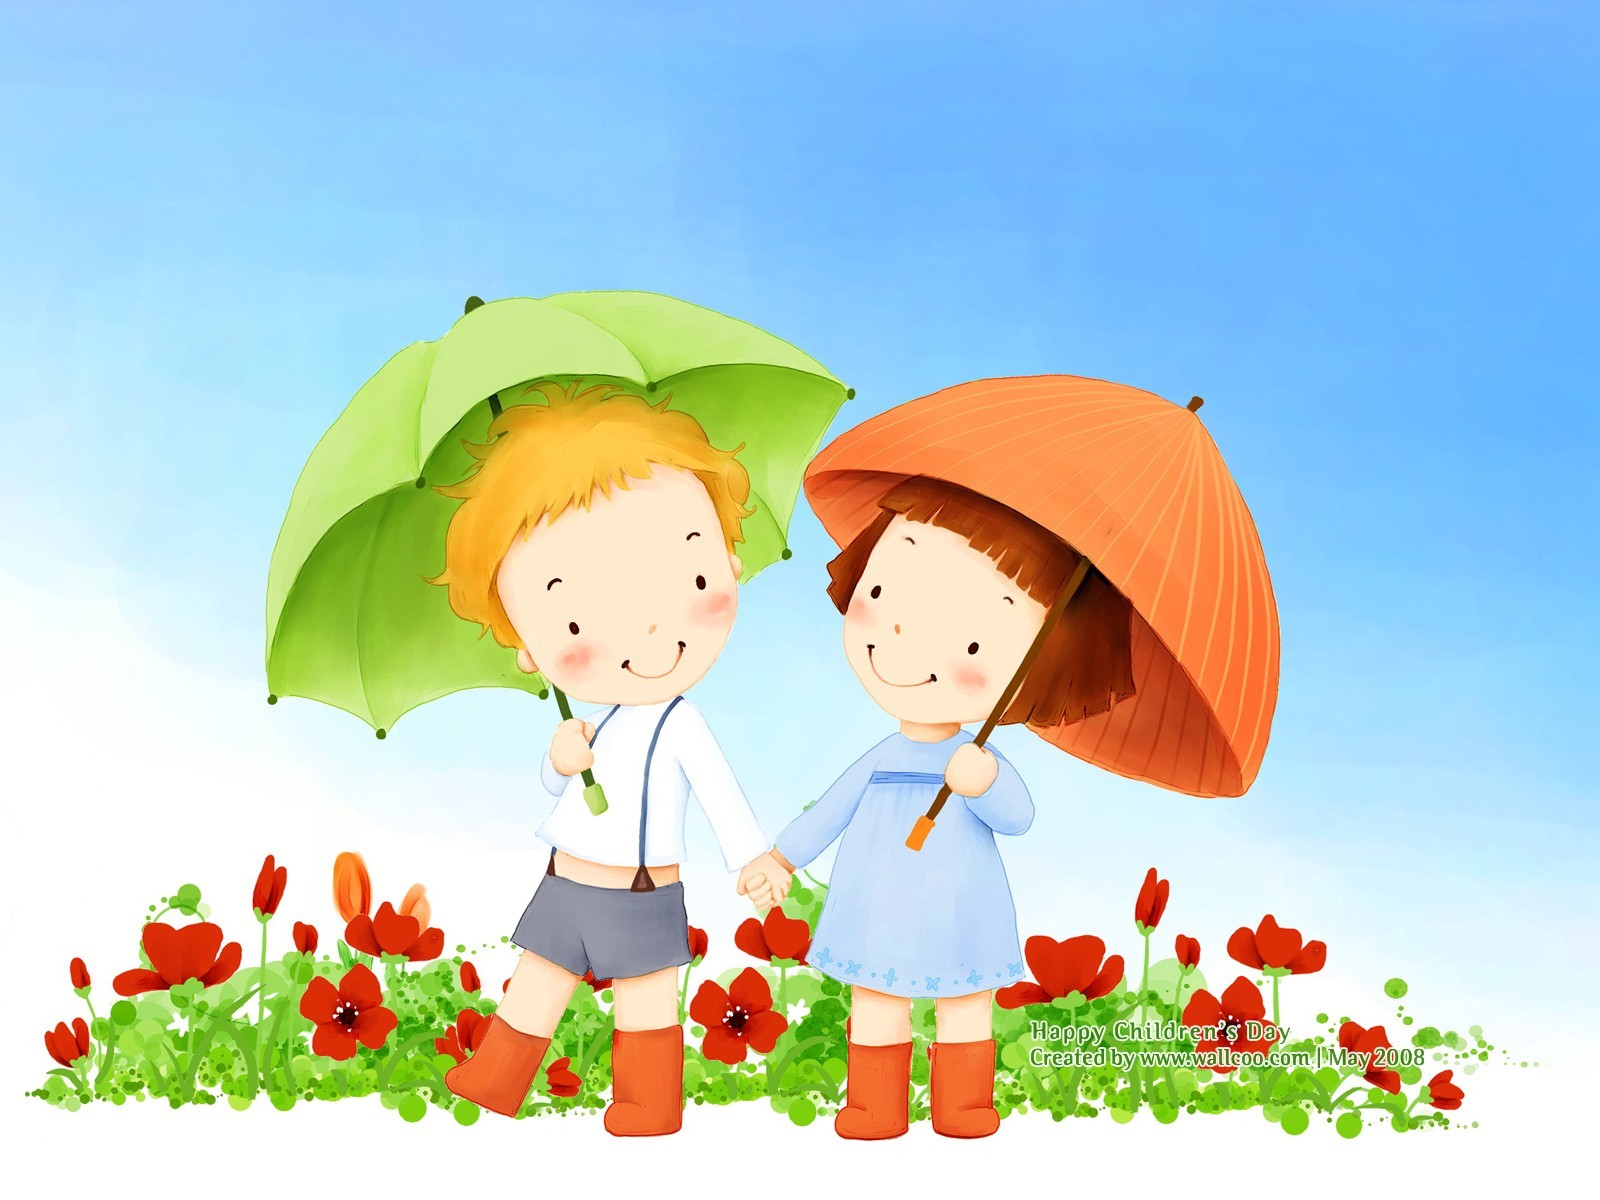 Lovely Children's Day wallpaper illustrator #17 - 1600x1200